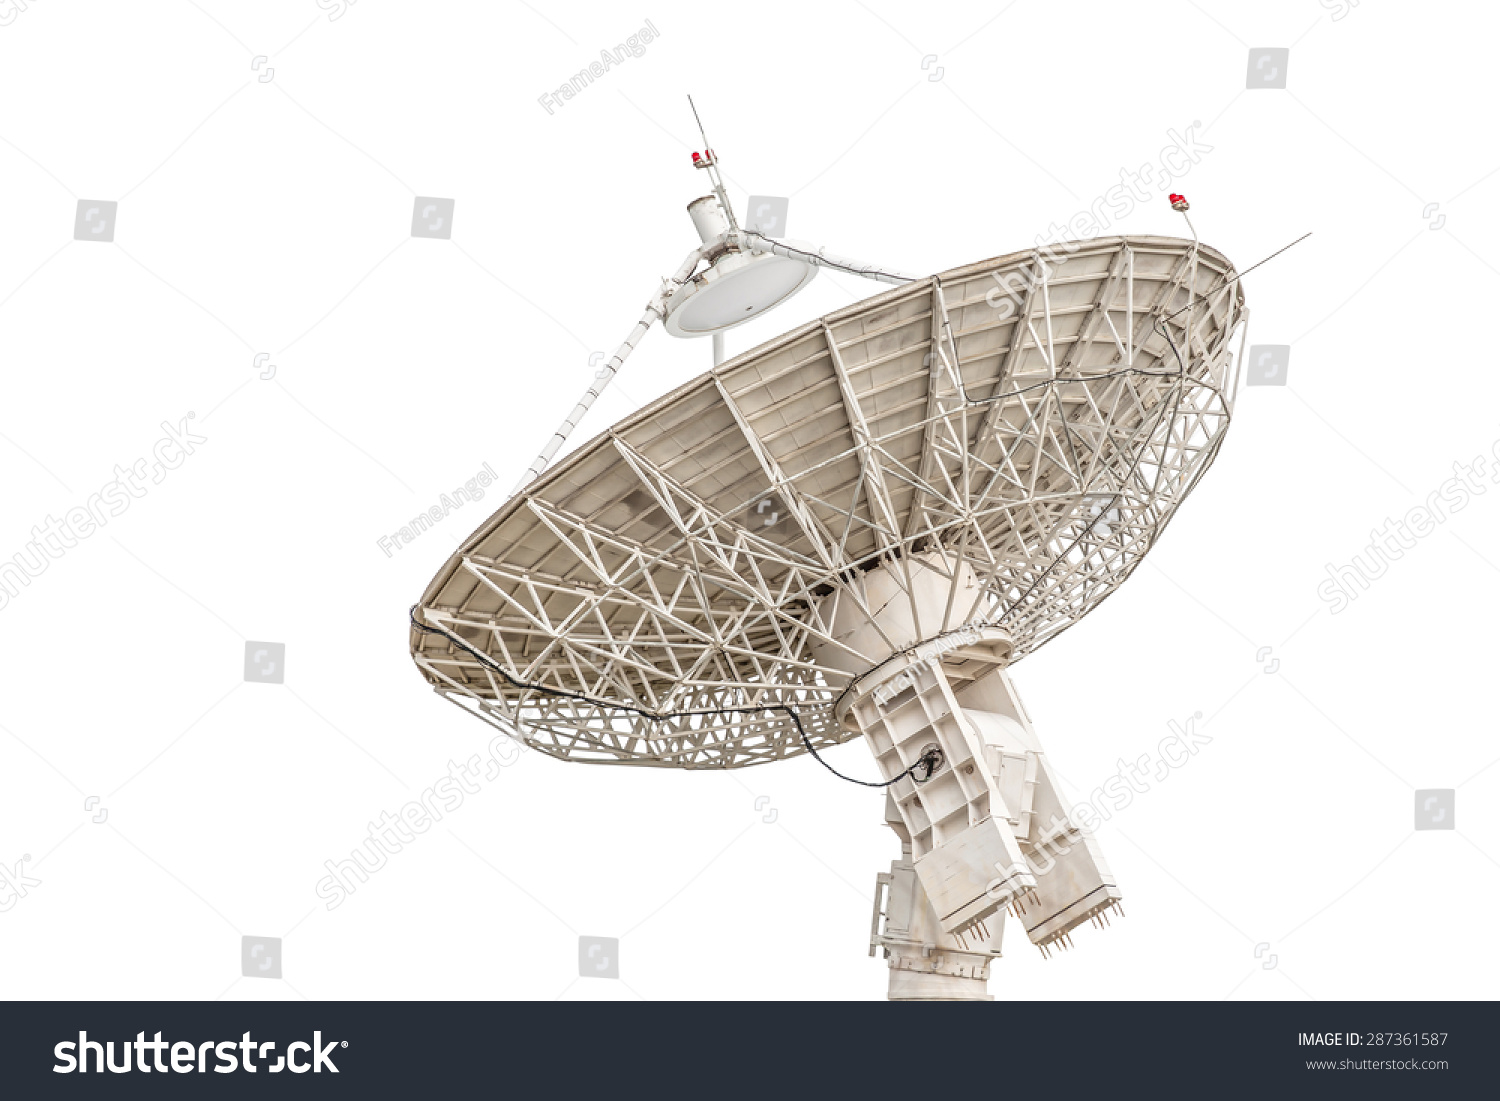 satellite dish antenna radar big size isolated on white background #287361587